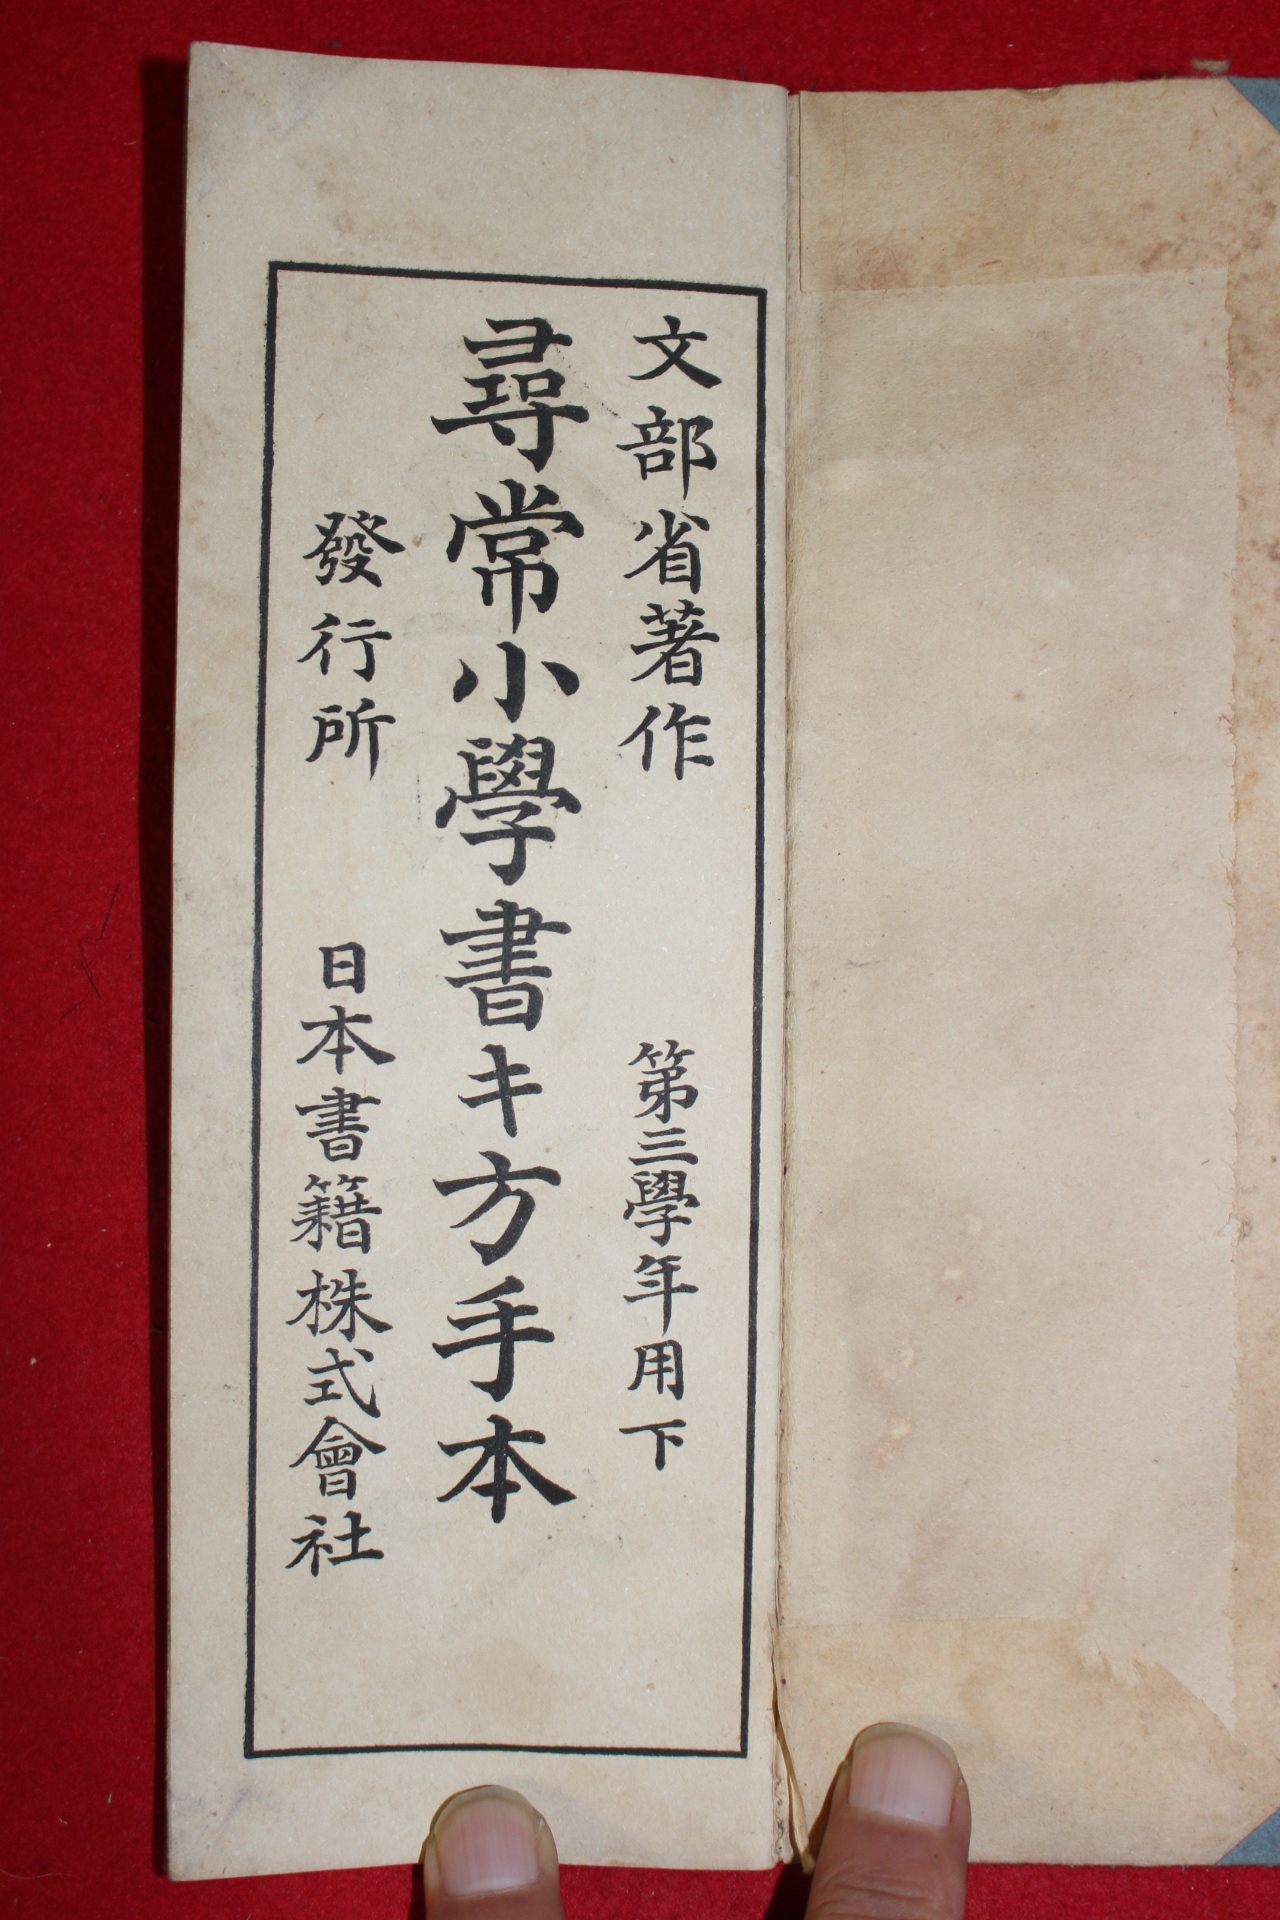 1903년 일본간행 문부성 휘상소학서방수본